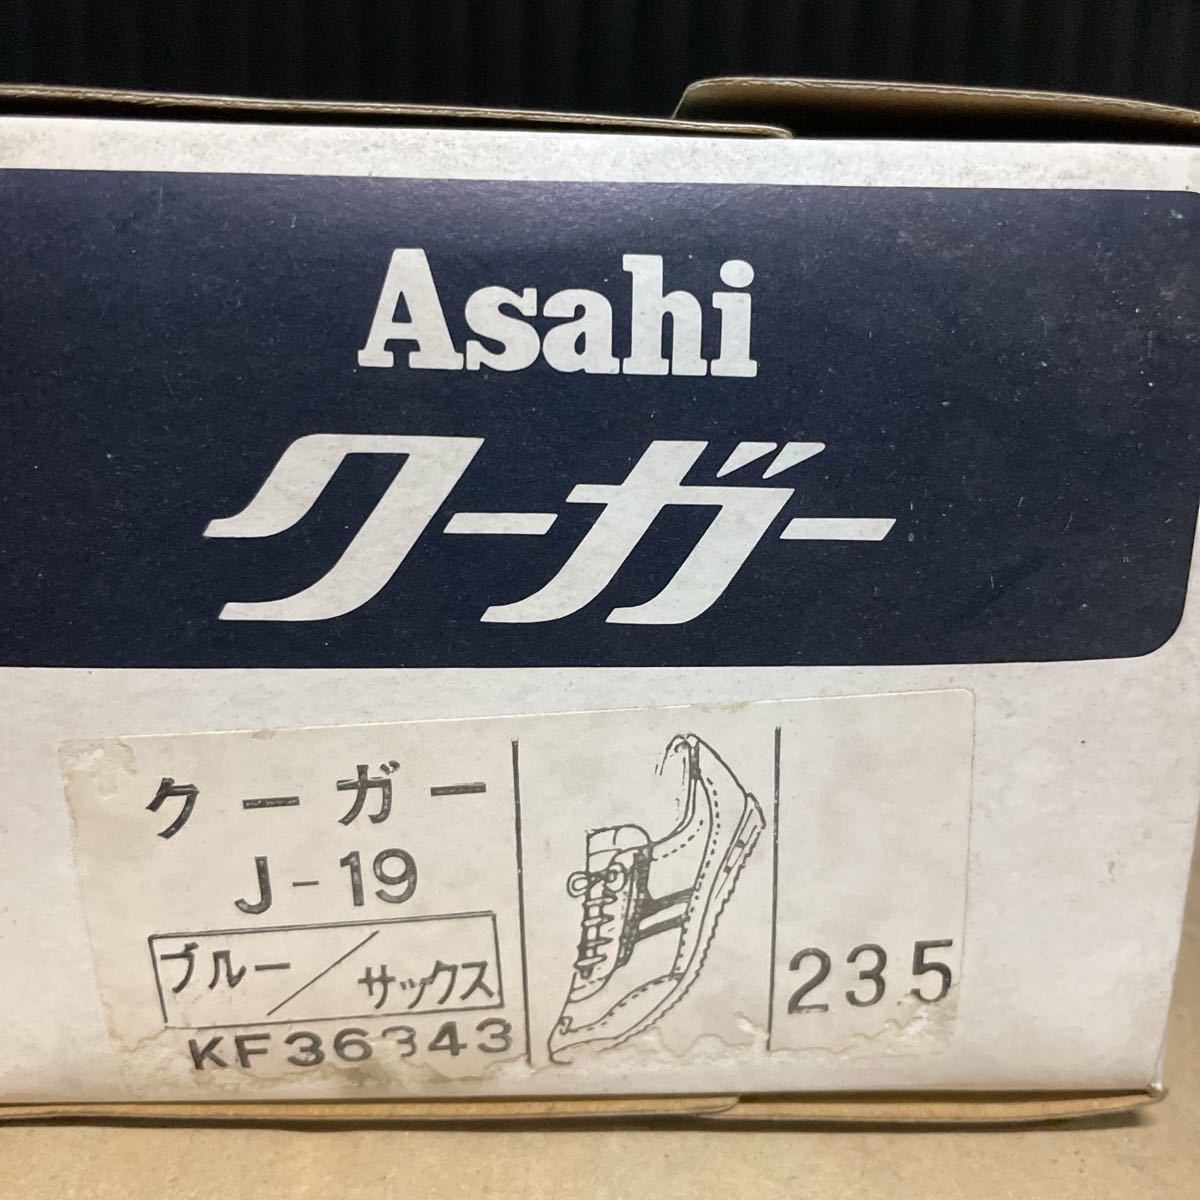 アサヒ クーガーJ-19 ブルー/サックス 23.5 ヴィンテージスニーカー 昭和レトロ_画像10